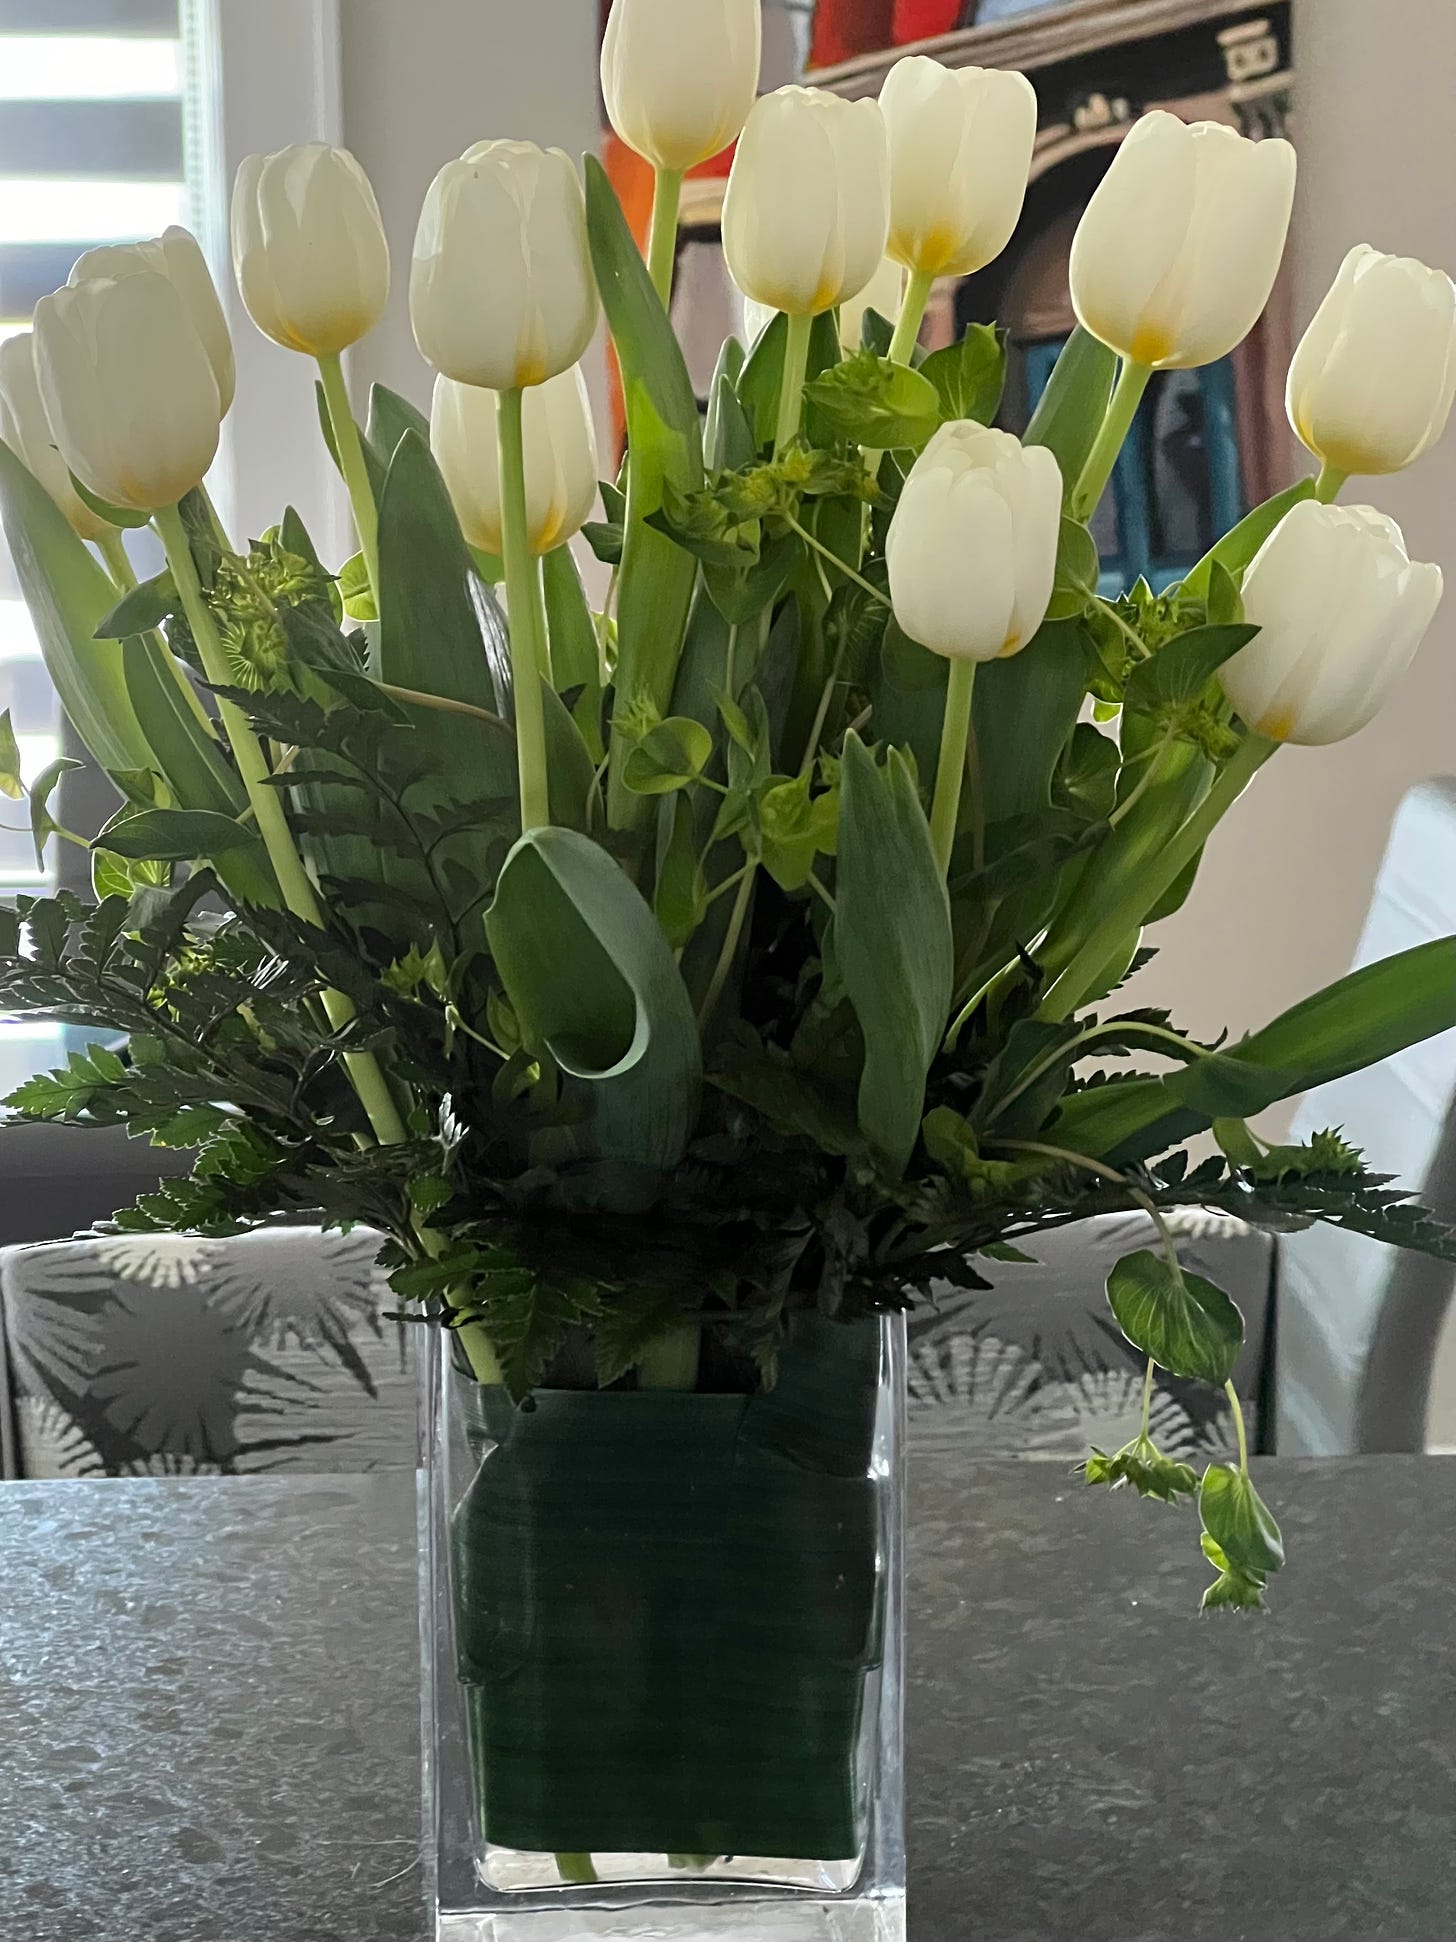 Vase full of white tulips